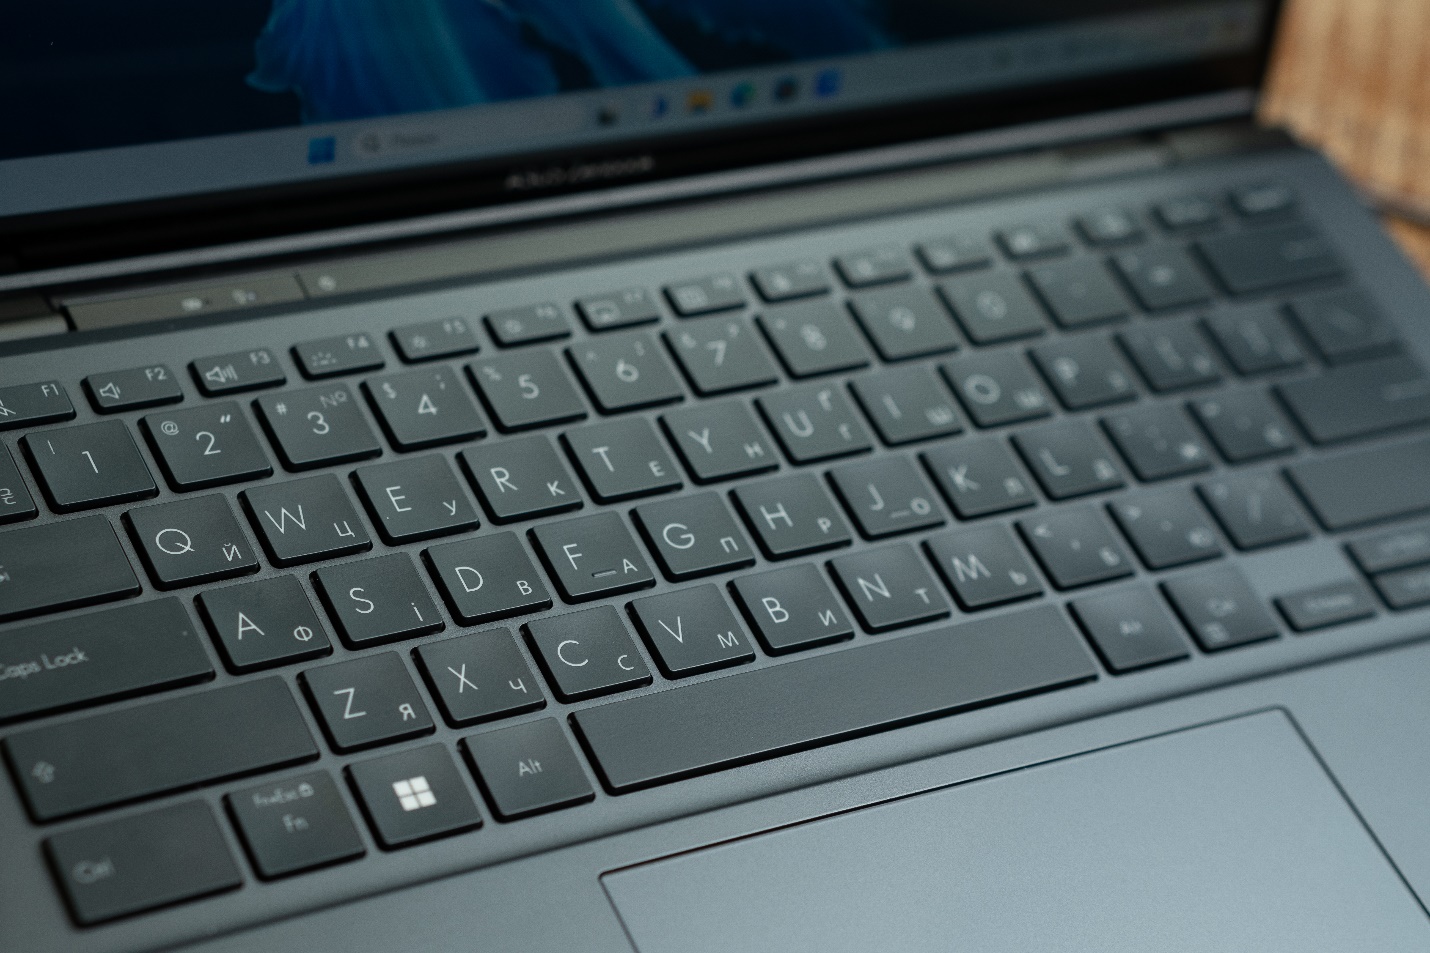 ASUS Zenbook DUO dual-screen laptop went on sale in Ukraine for ₴108,500